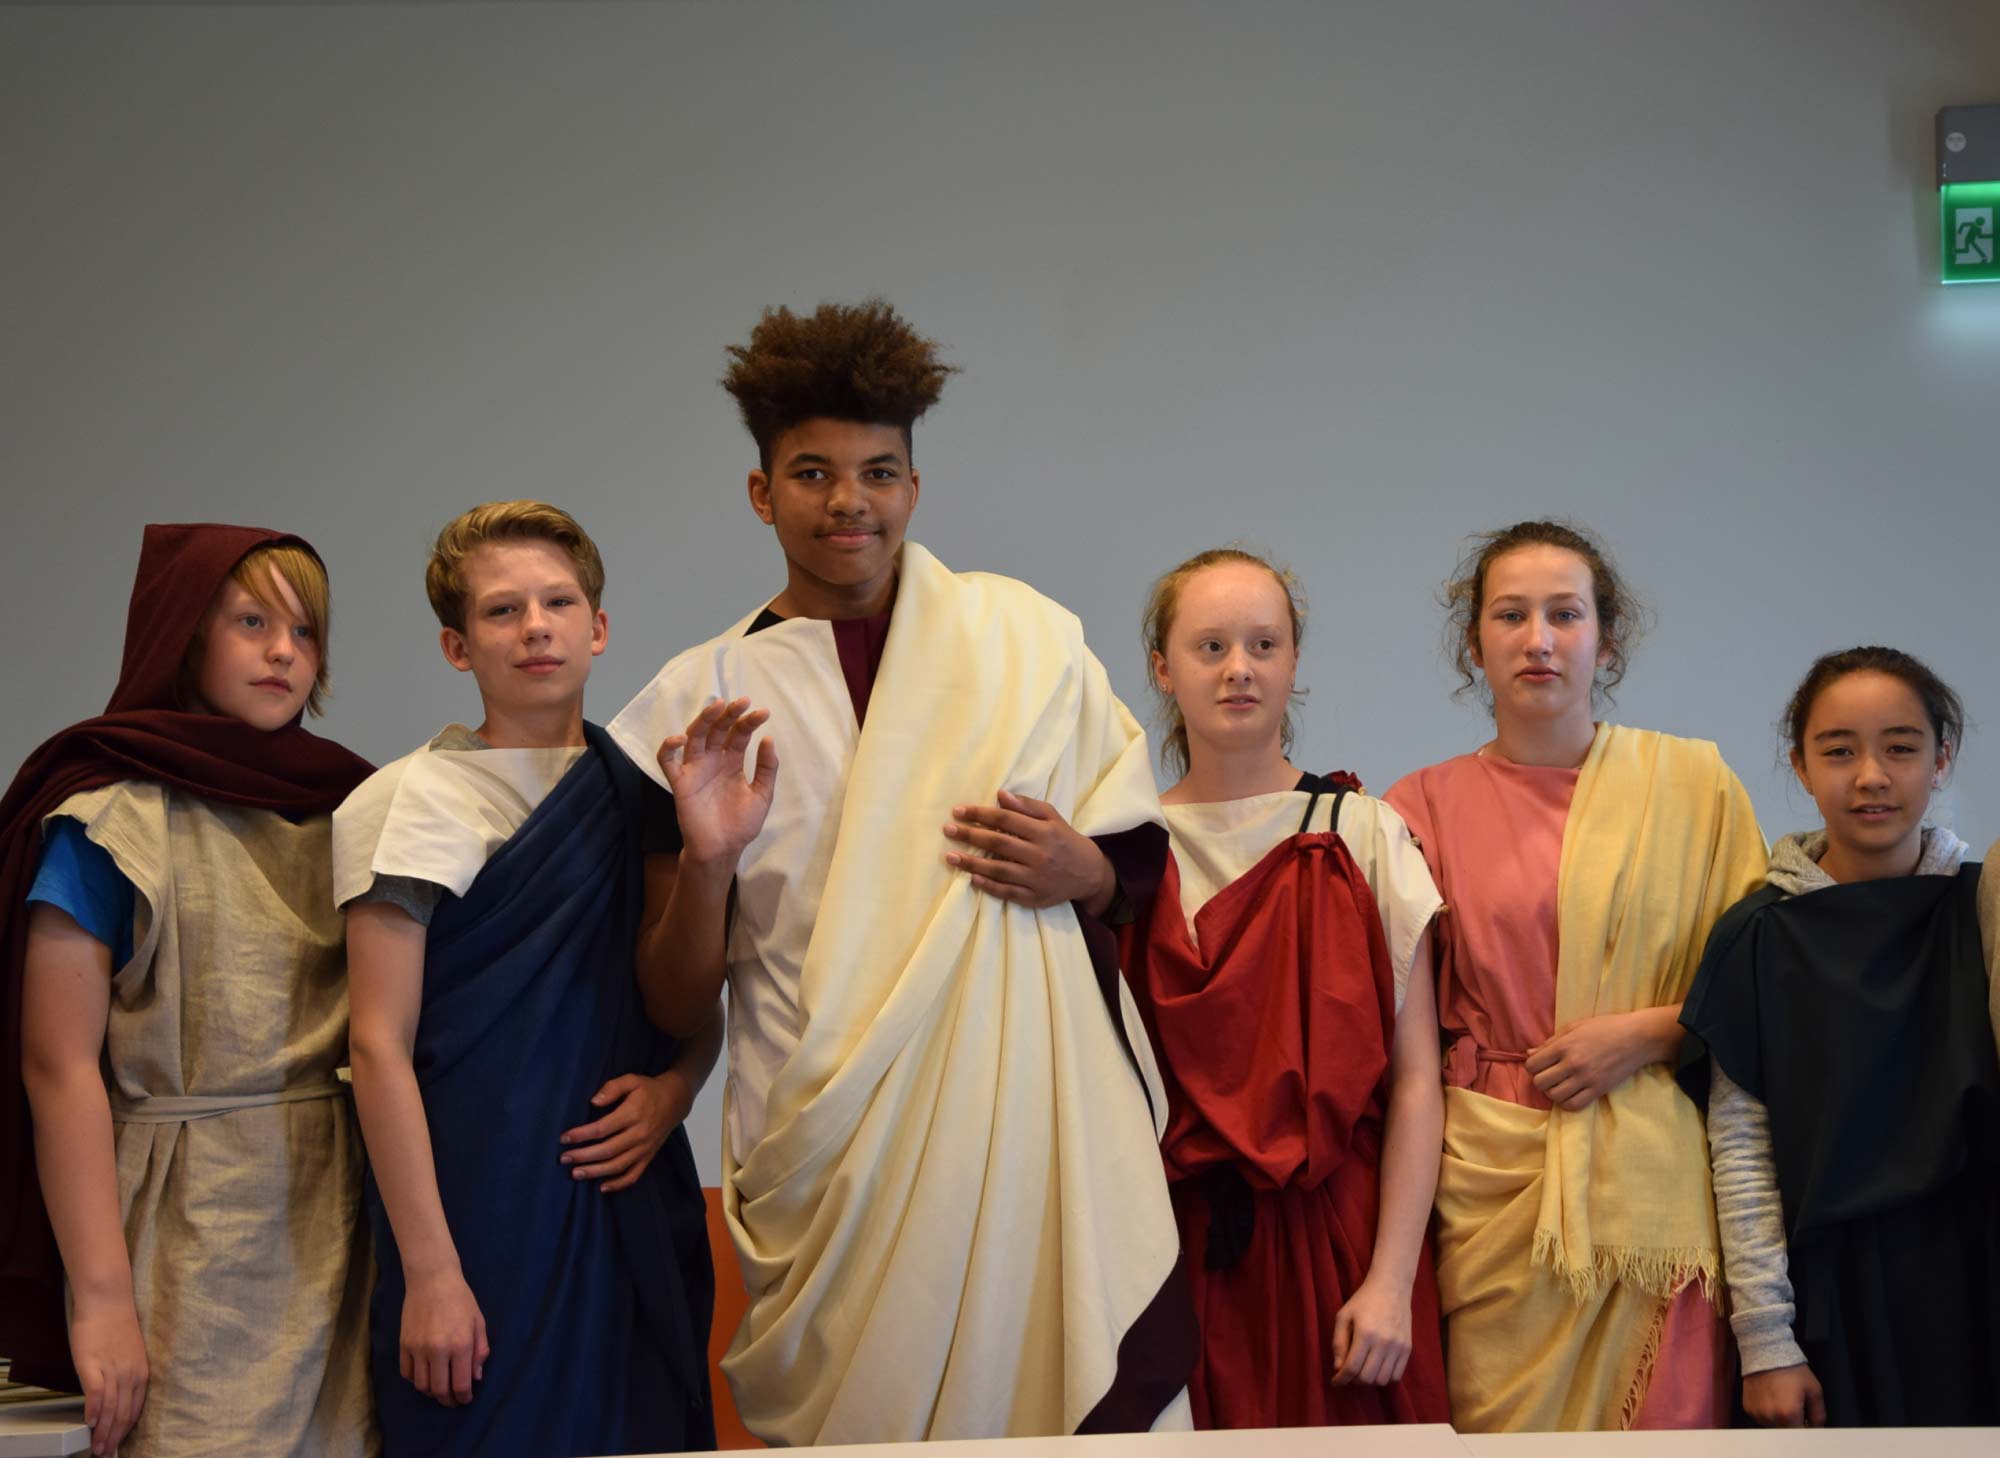 Gruppenfoto von Schüler:innen in römischer Kleidung (Toga und Tunikas)